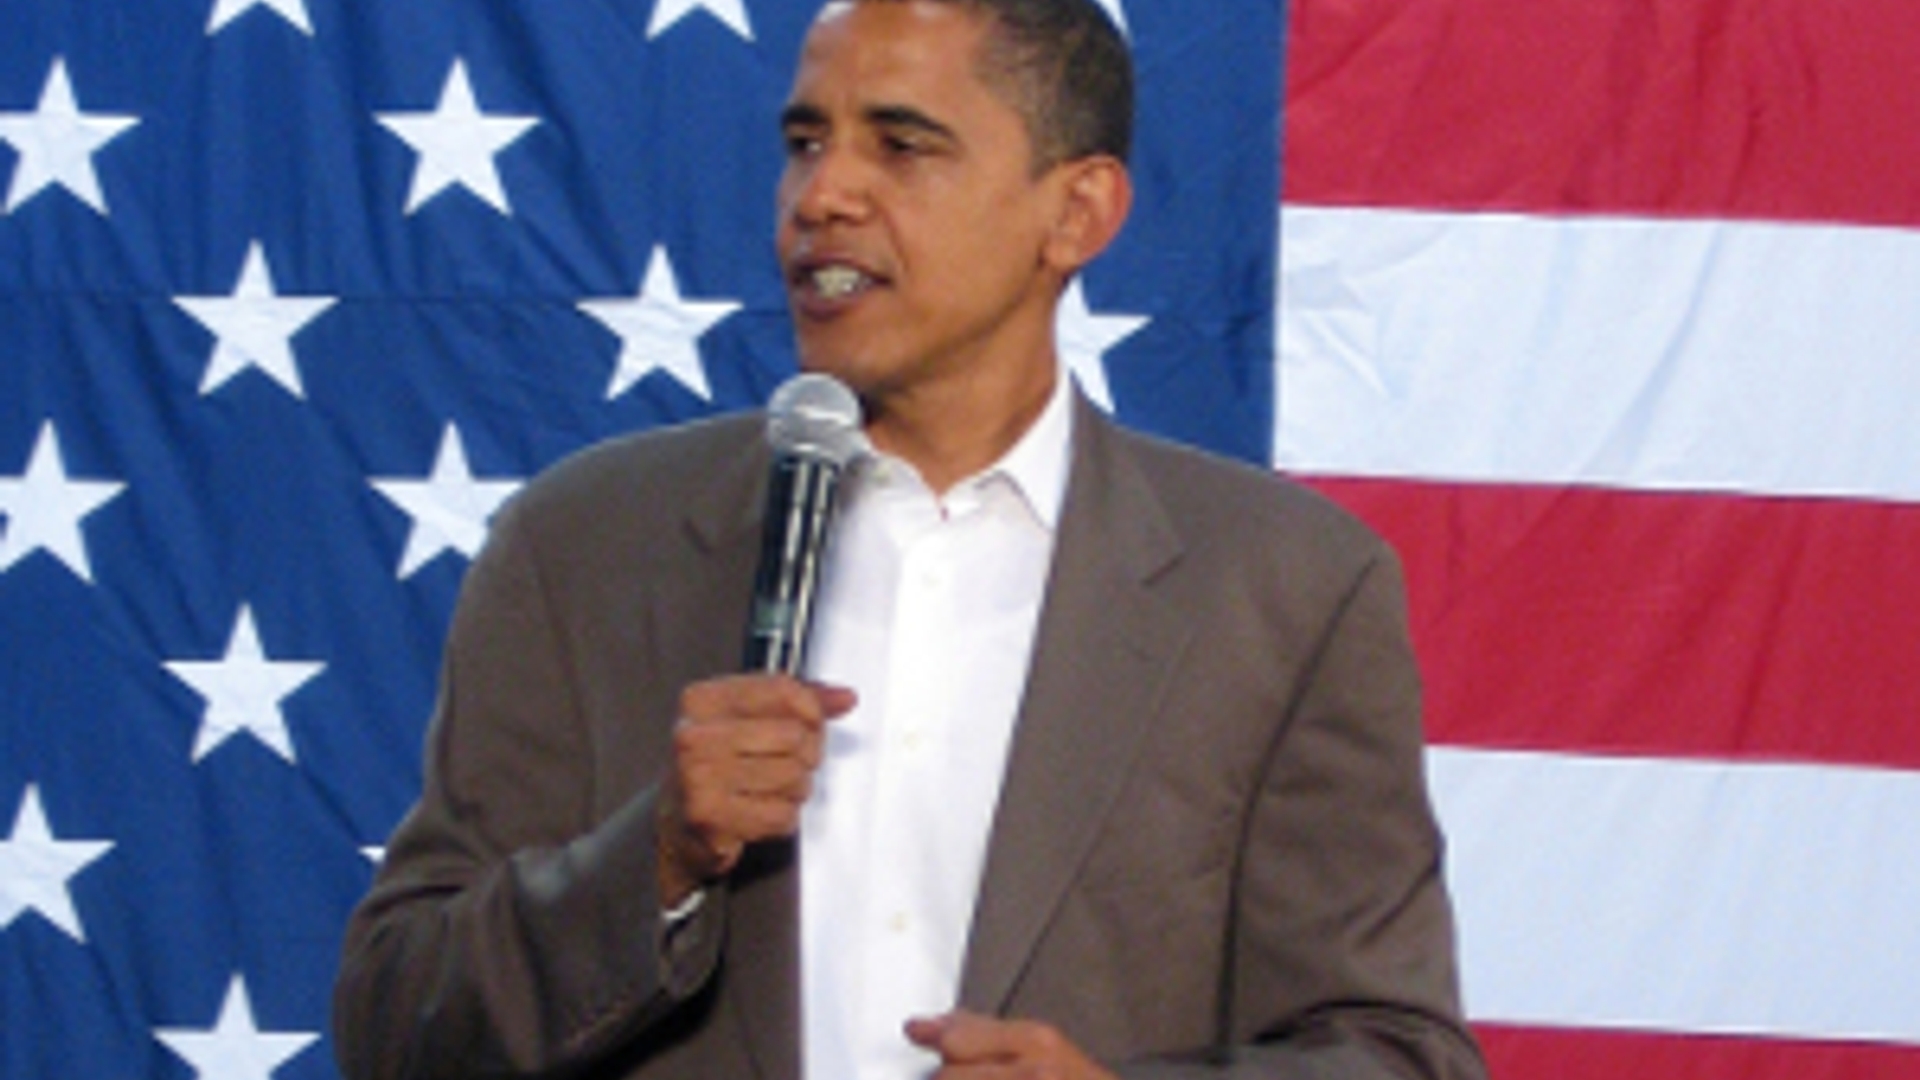 flickr_obama_voor_amerikaanse_vlag_300_01.jpg